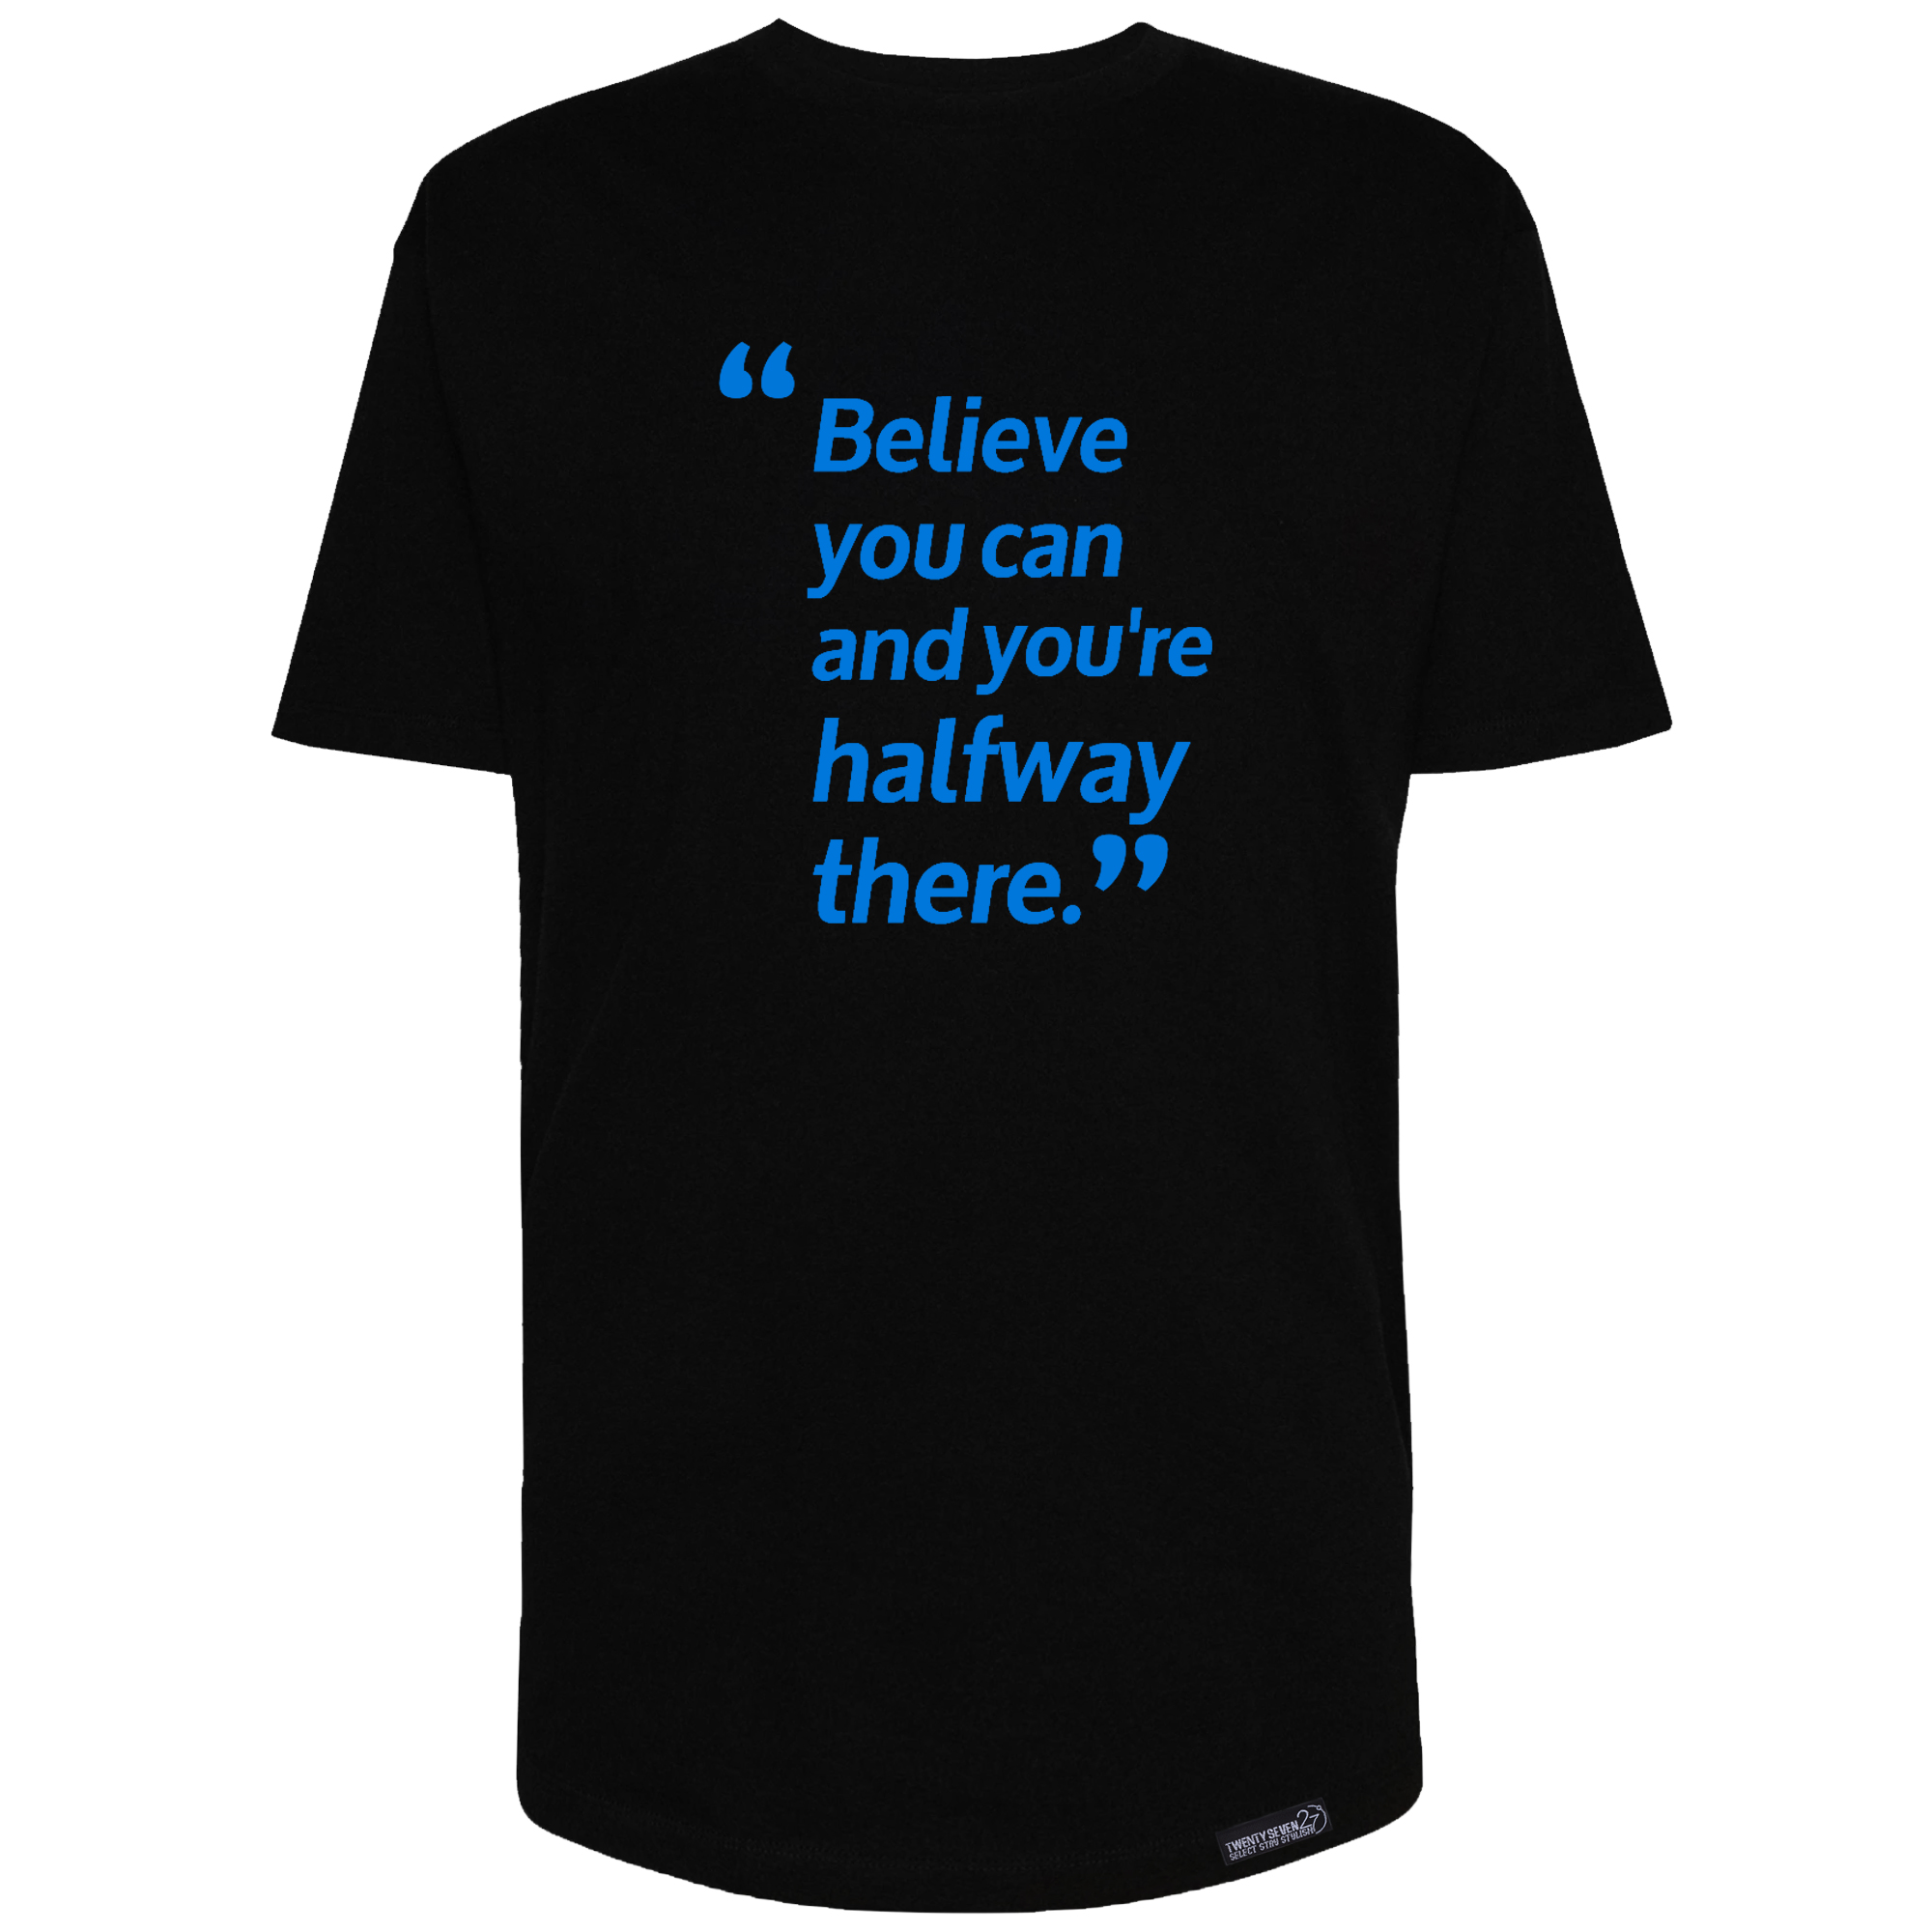 تی شرت آستین کوتاه مردانه 27 مدل Believe کد MH1516